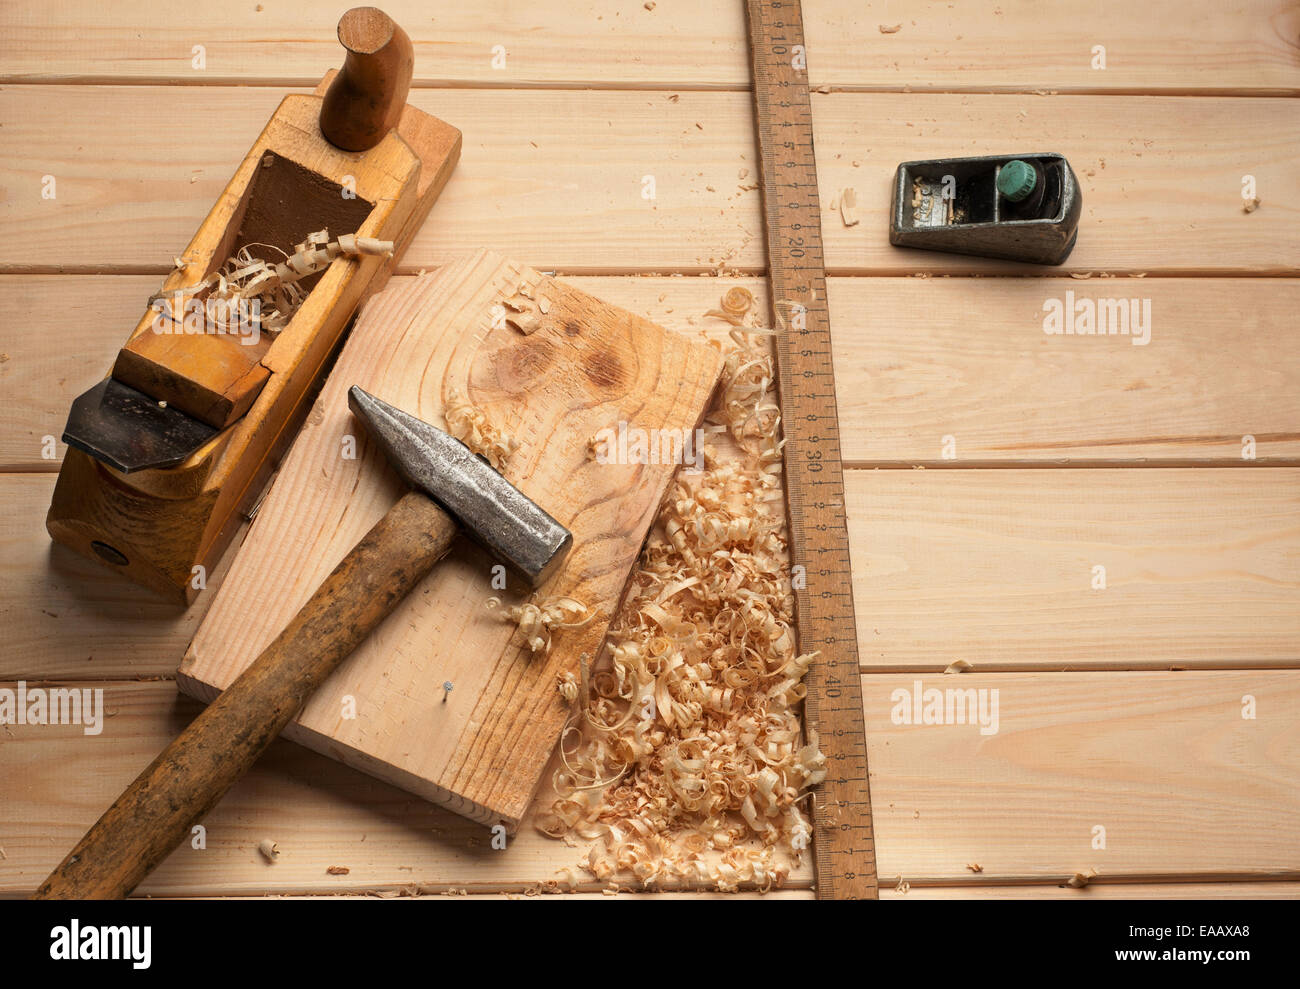 Falegname attrezzi,martello,metro, unghie, trucioli e piano su tavola di legno Foto Stock